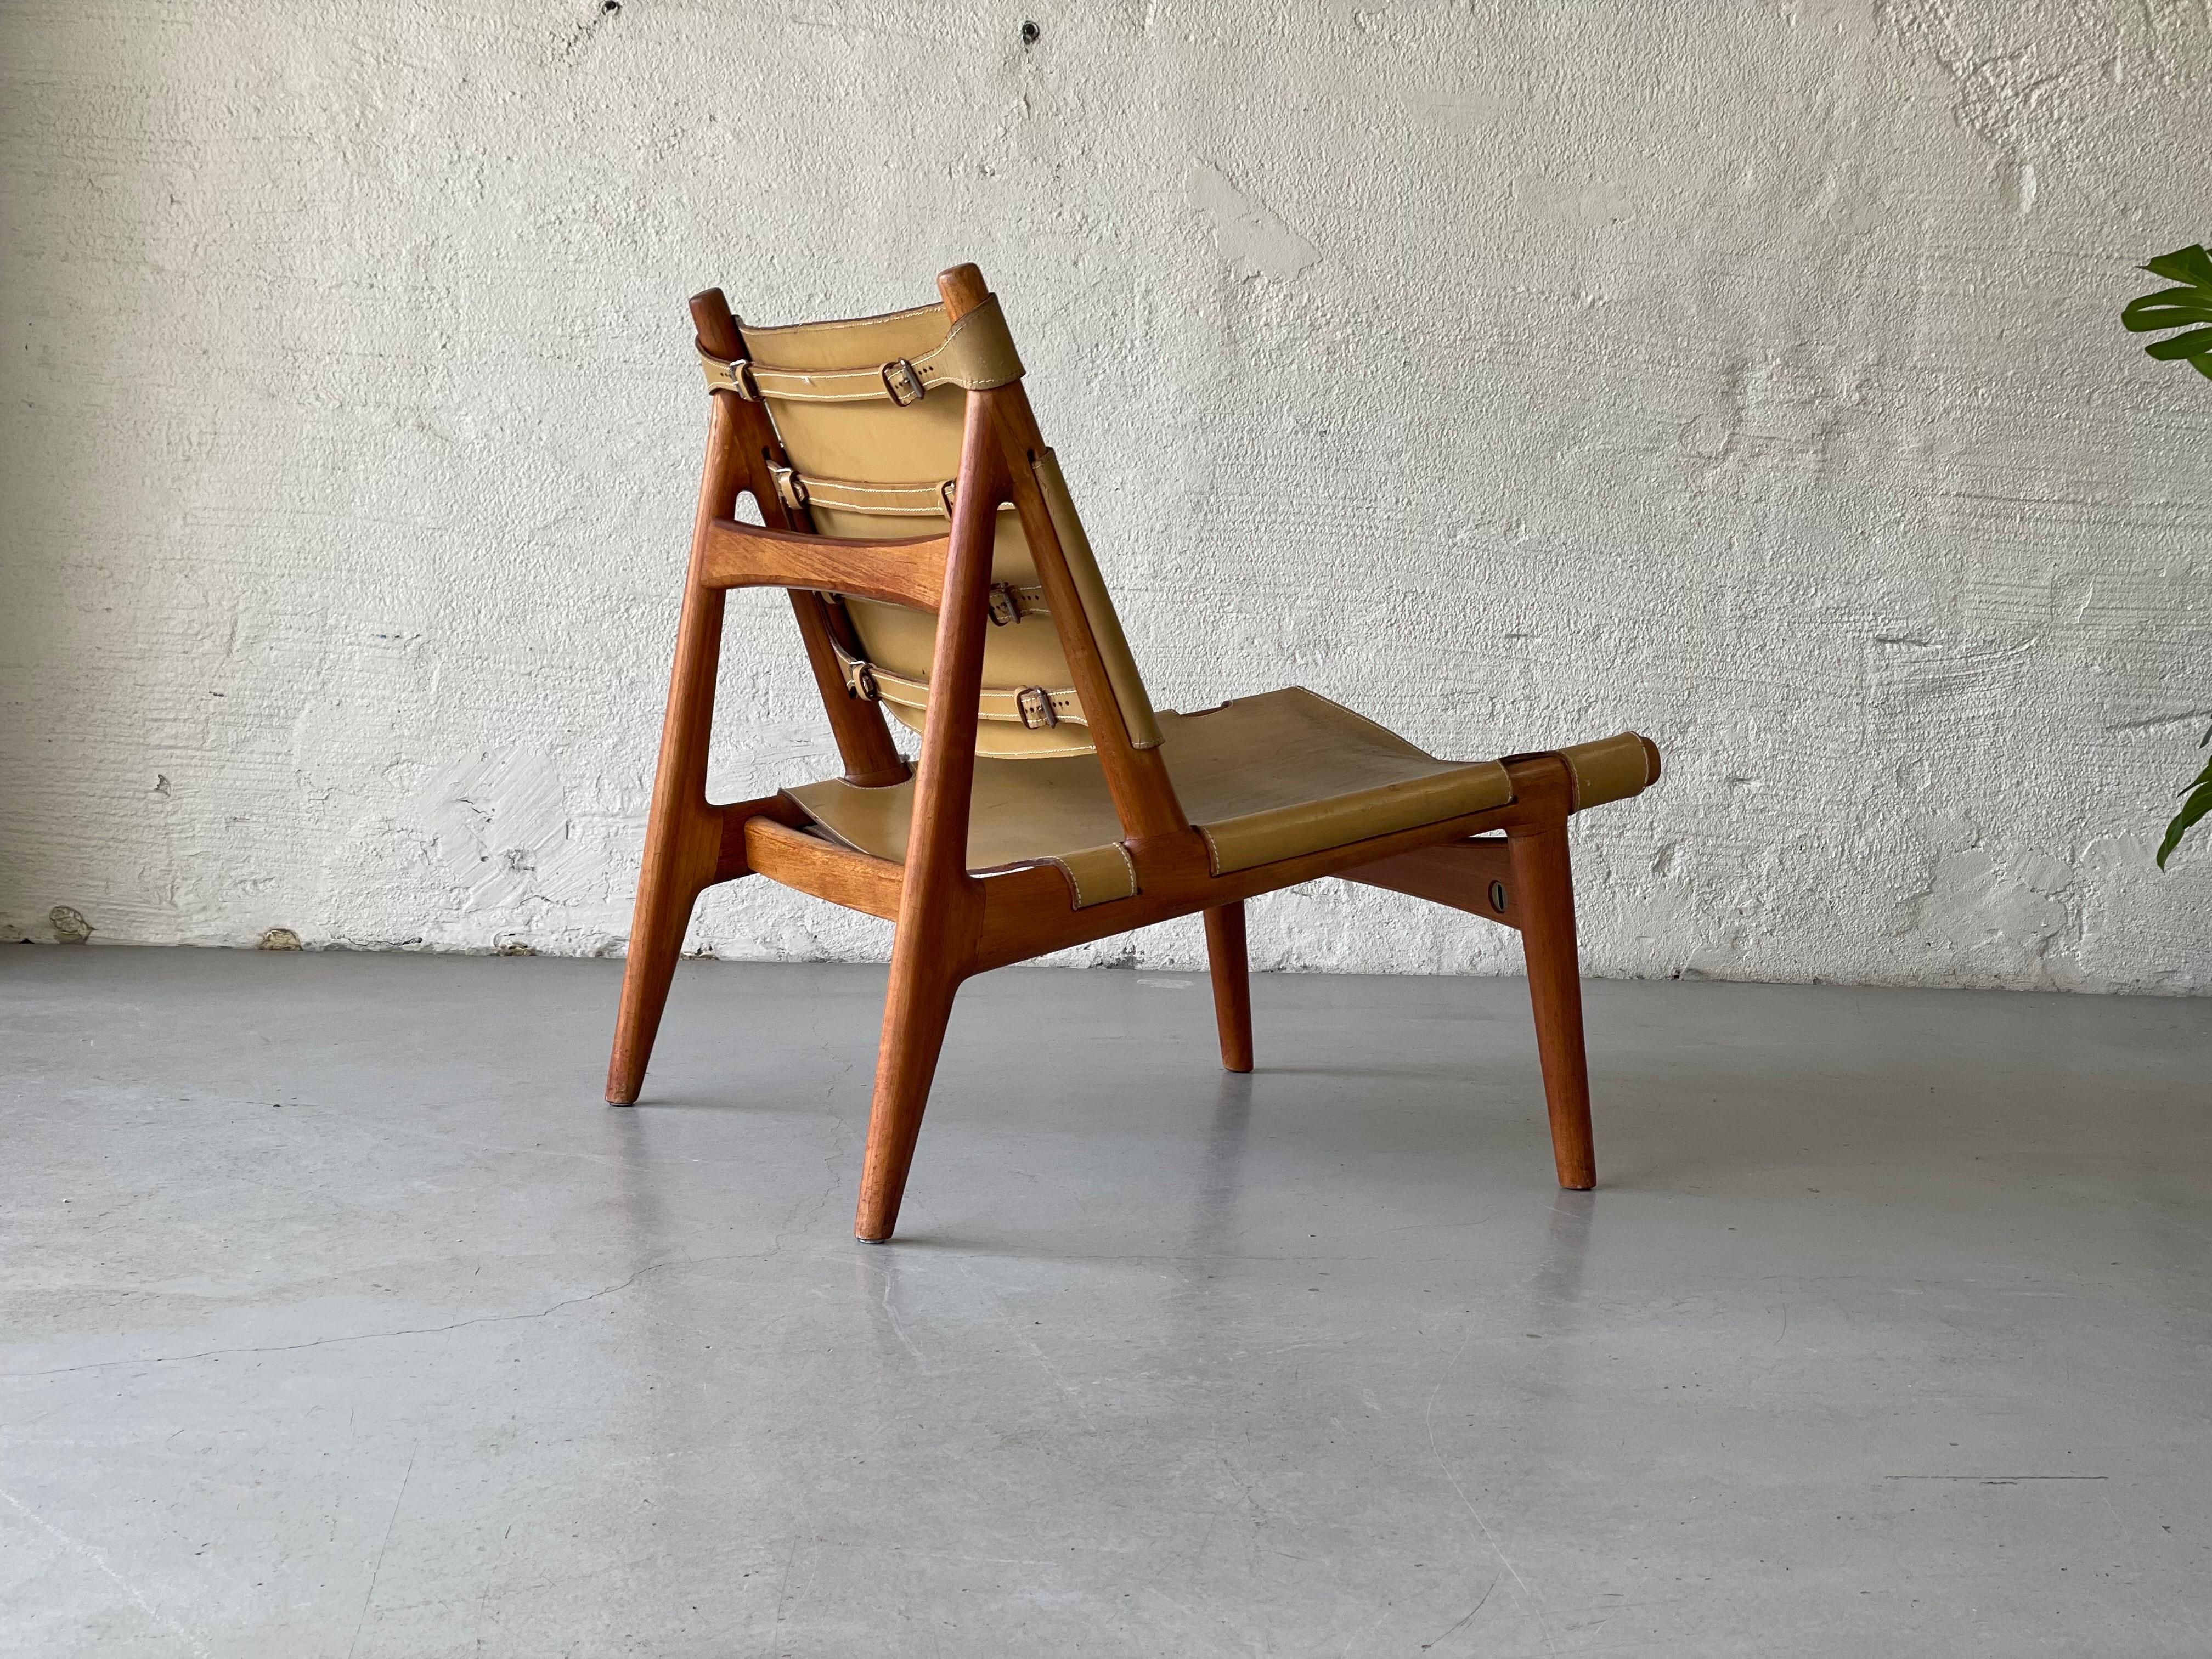 Une chance unique d'obtenir une chaise de chasseur Torbjørn Afdals, l'une des rares existantes.

Le mouvement du design moderne du milieu du siècle a donné naissance à certains des meubles les plus emblématiques que le monde ait jamais vus. La